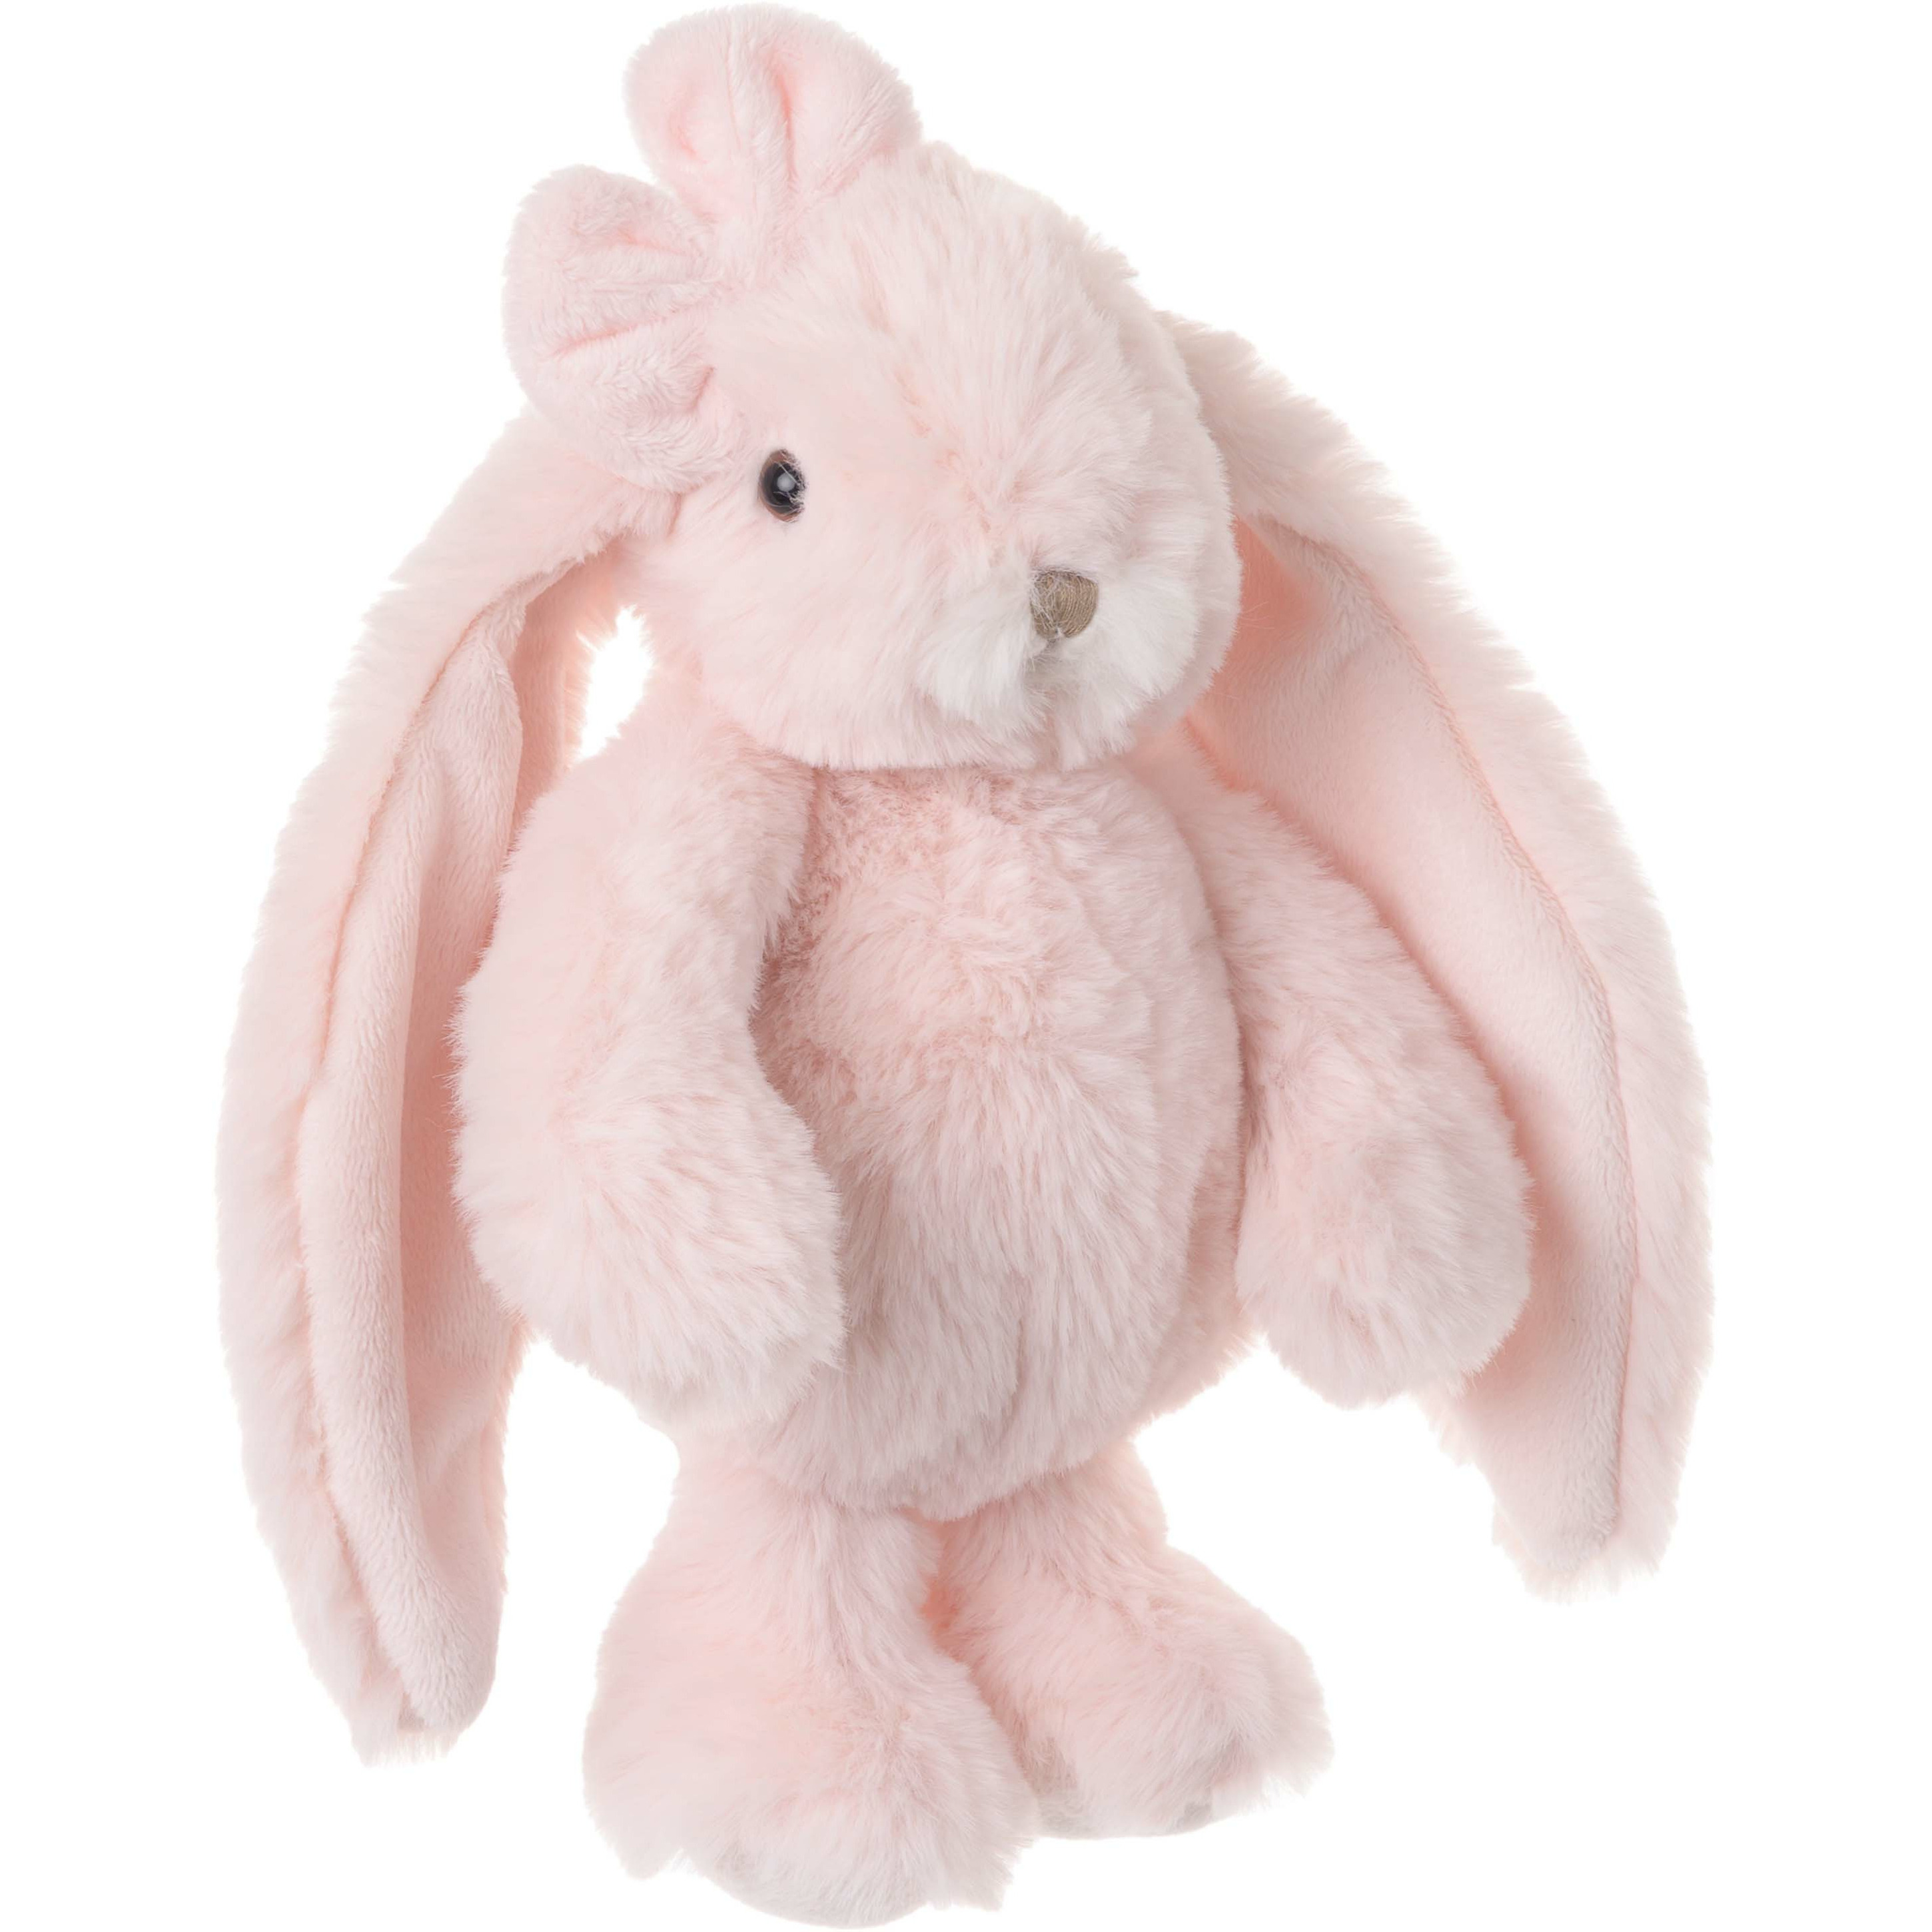 Bukowski pluche konijn knuffeldier lichtroze staand 22 cm luxe knuffels